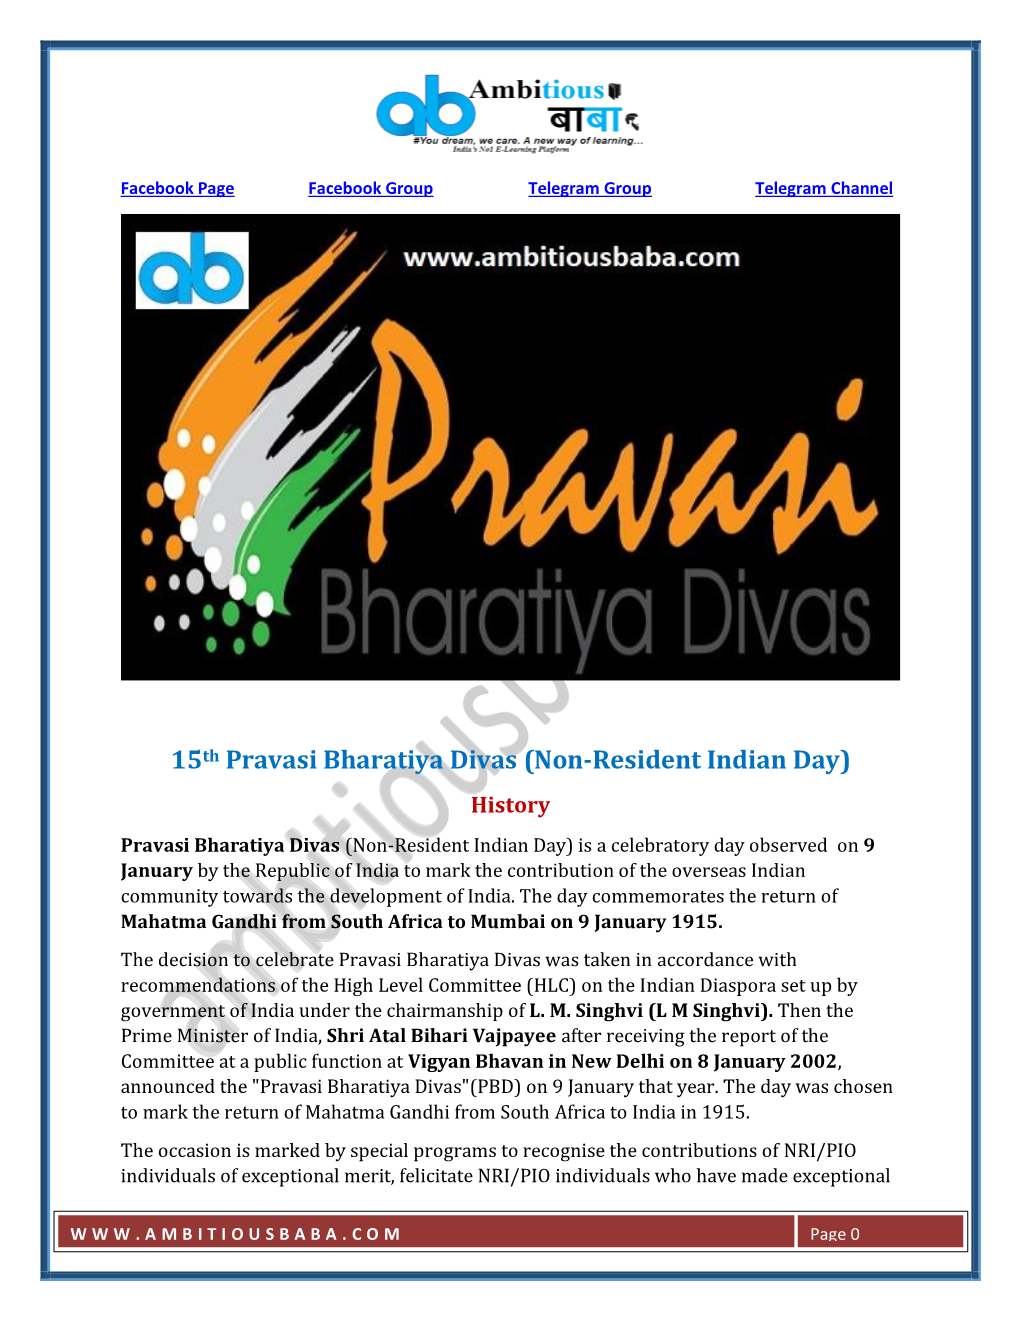 15Th Pravasi Bharatiya Divas